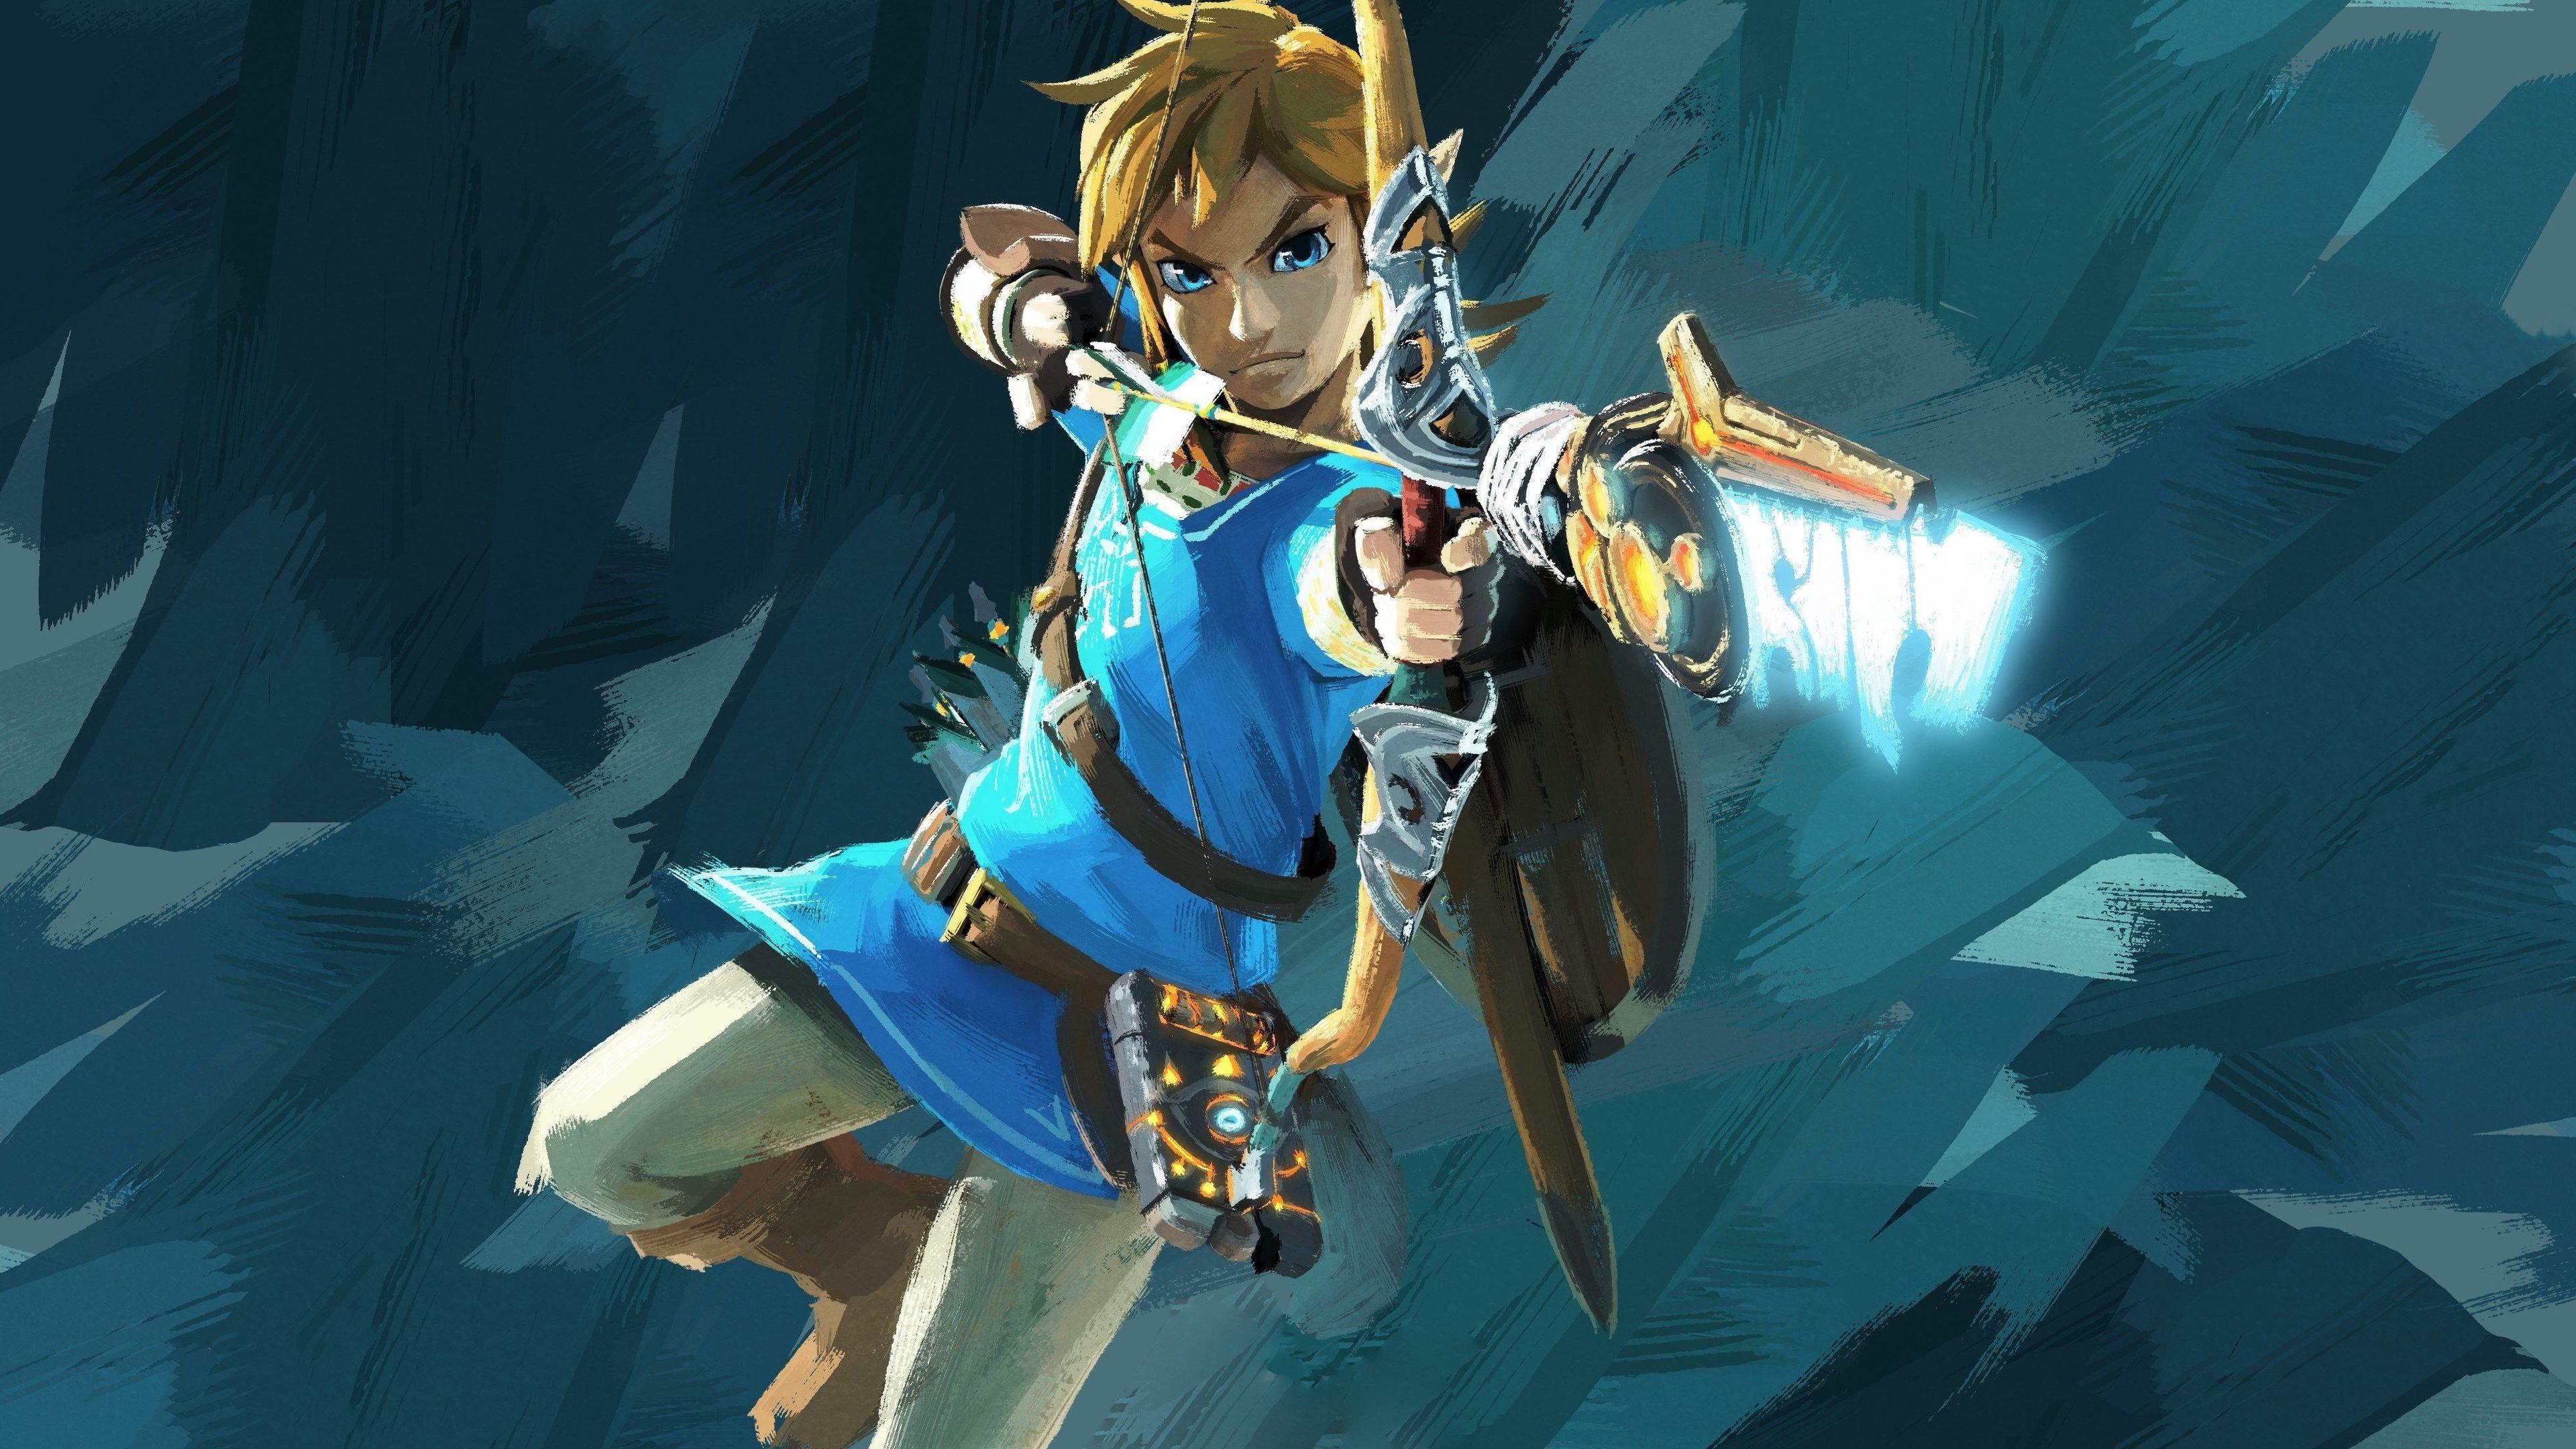 Các hình nền Link Zelda Wallpapers với sự hiện đại kết hợp chủ đề game The Legend of Zelda sẽ đánh thức những ký ức tuổi thơ của bạn. Các bạn sẽ không thể rời mắt khỏi những hình nền đẹp và rất độc đáo này. Hãy khám phá và tìm hiểu thêm.